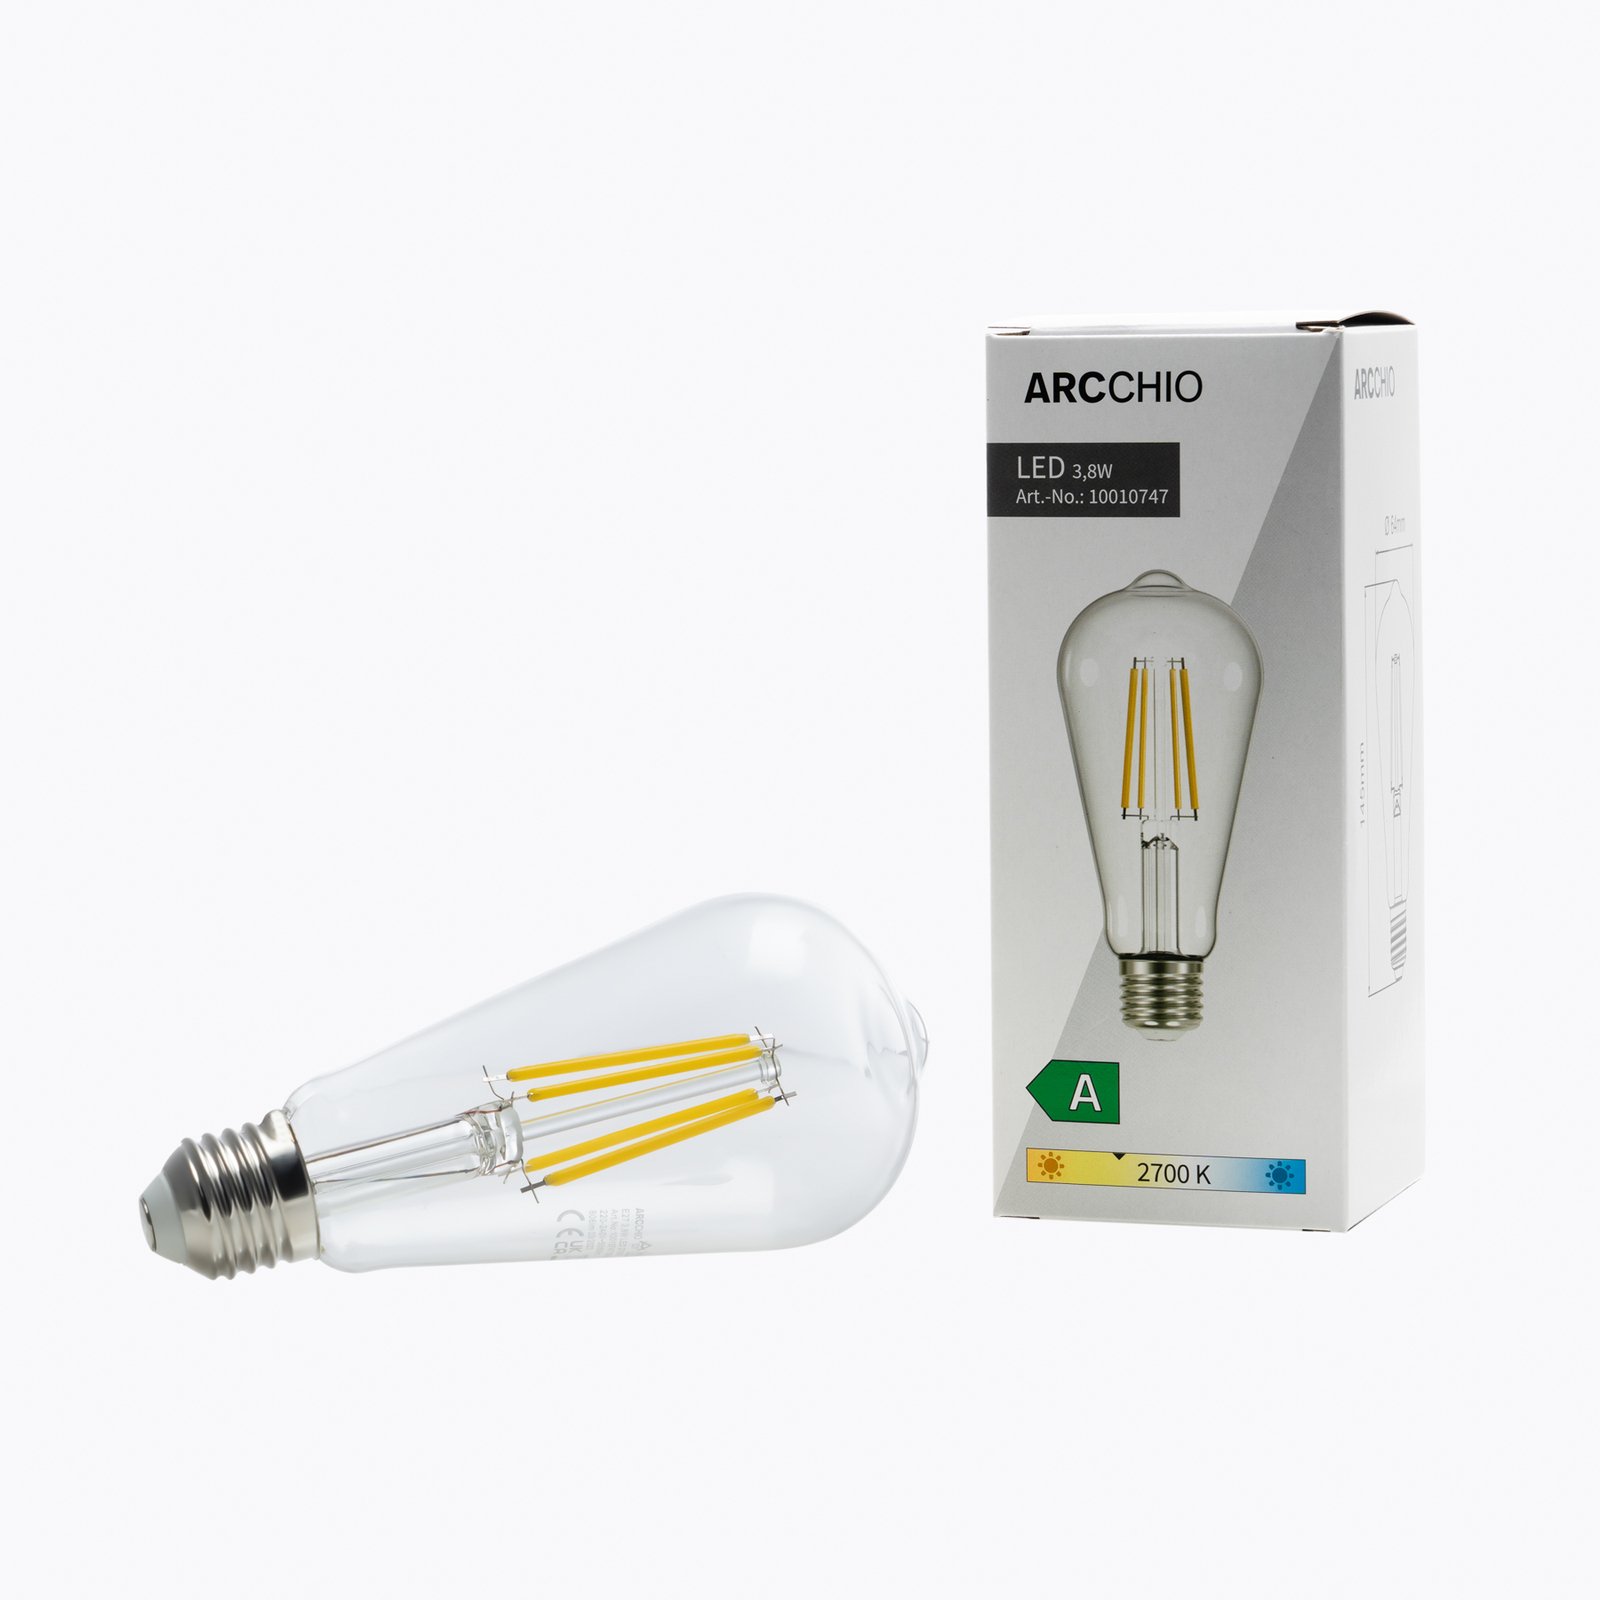 Arcchio rustic LED bulb clear E27 3.8W 2700K 806lm